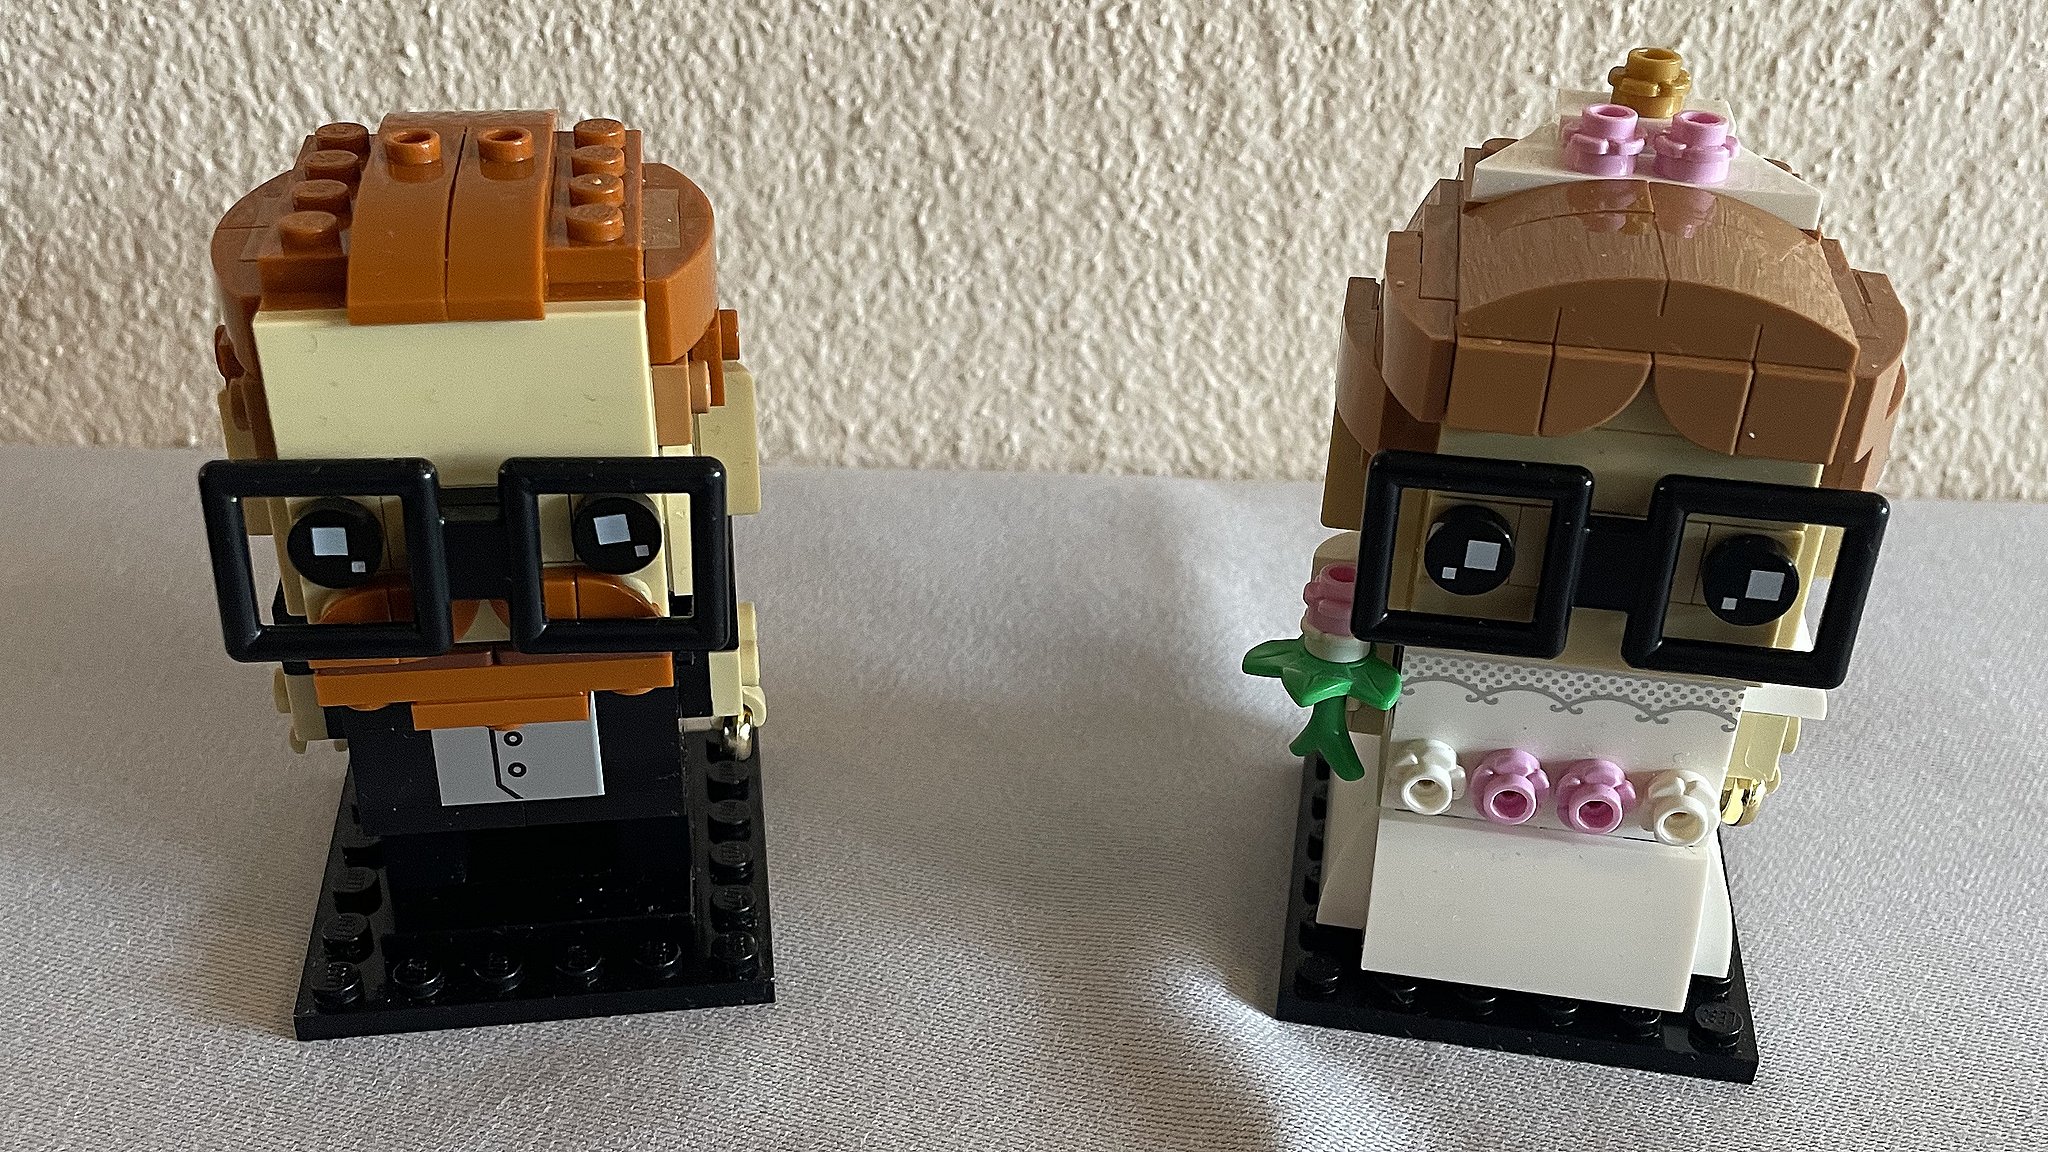 Fjendtlig fløde Lænestol Brudebuket og bordkort i Lego: Lillian og Jimmi brugte knap 10.000 klodser  på deres bryllup | TV MIDTVEST